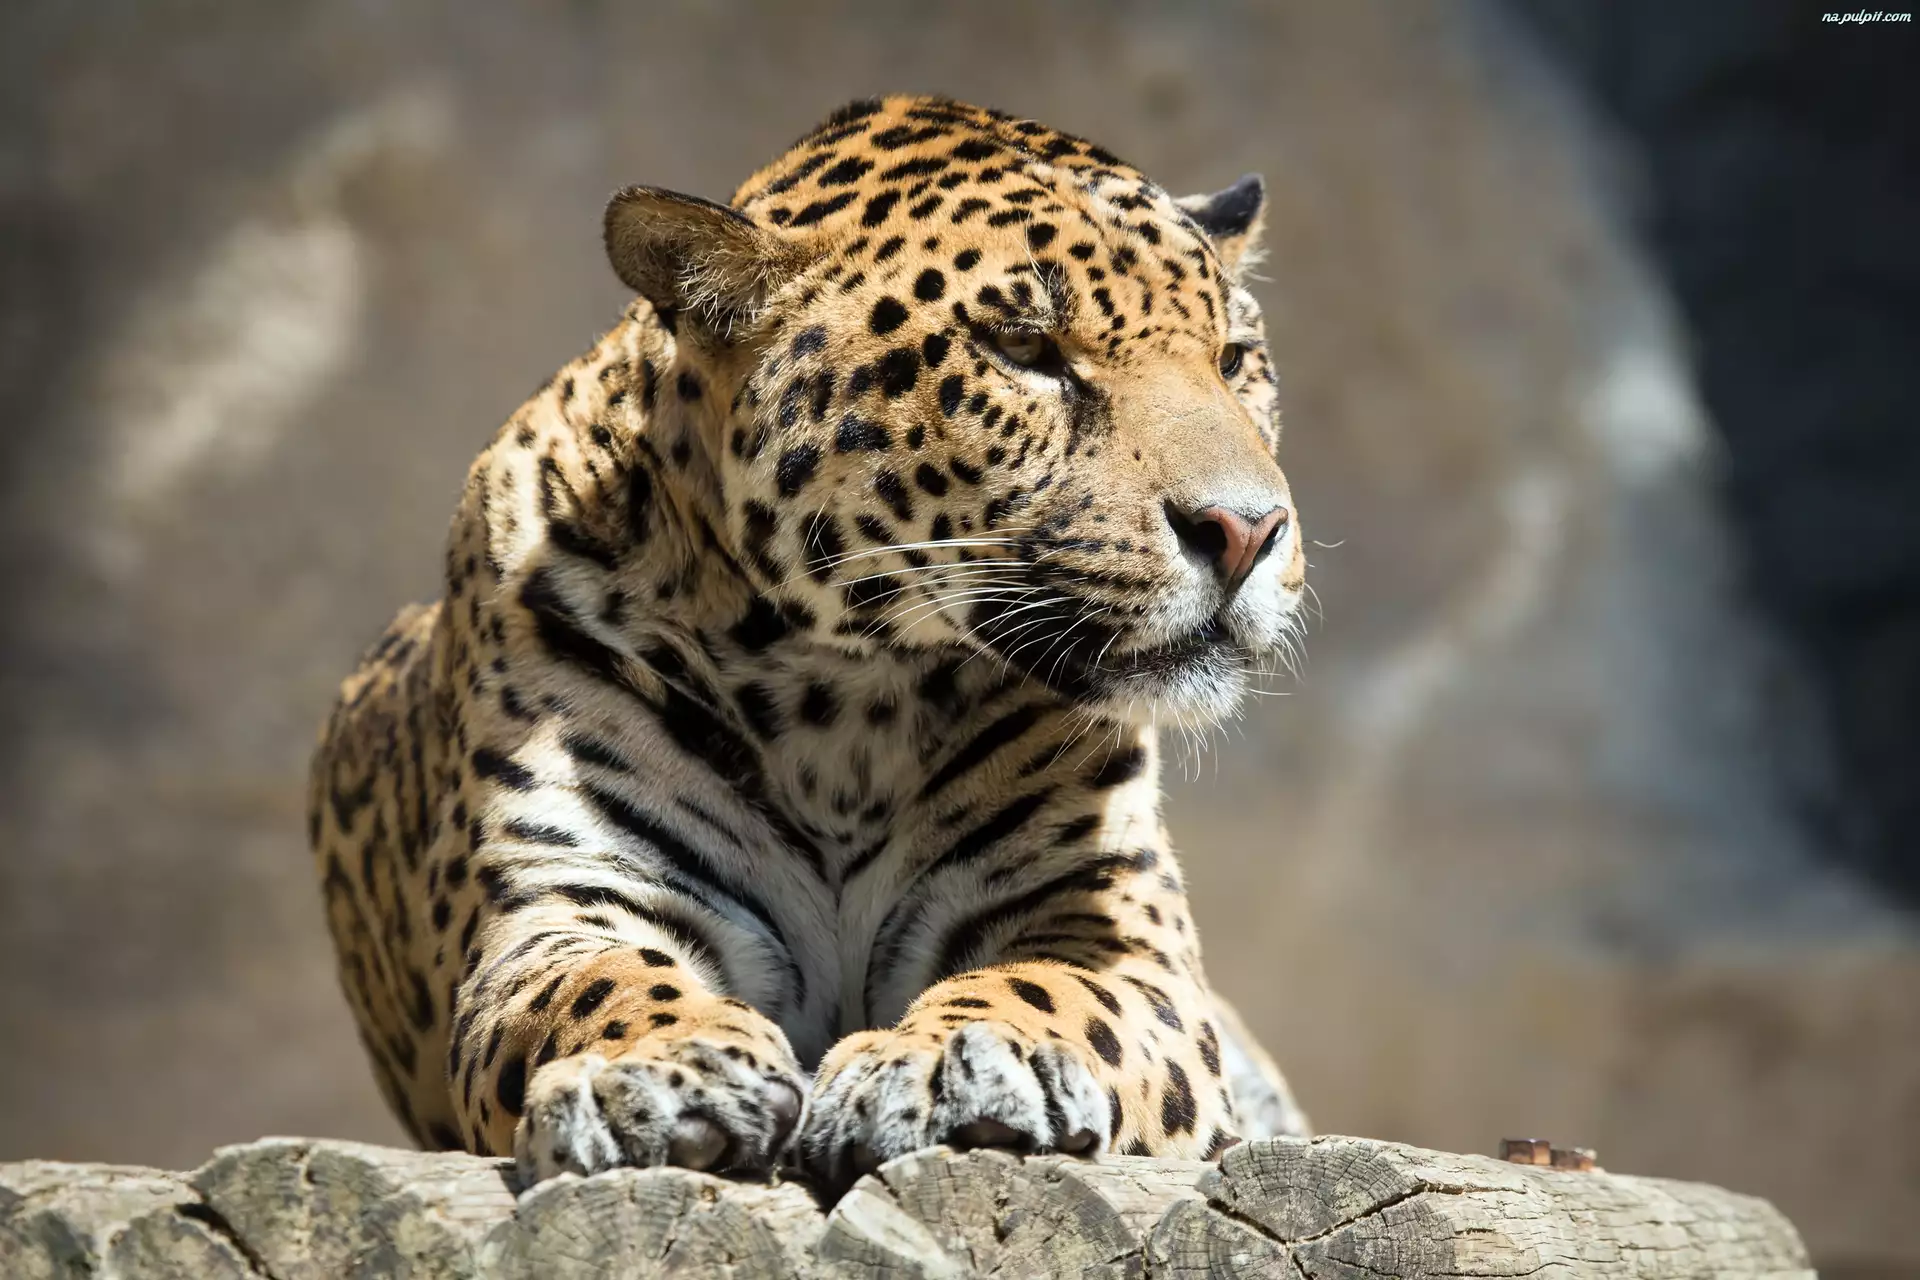 Jaguar, Drewno